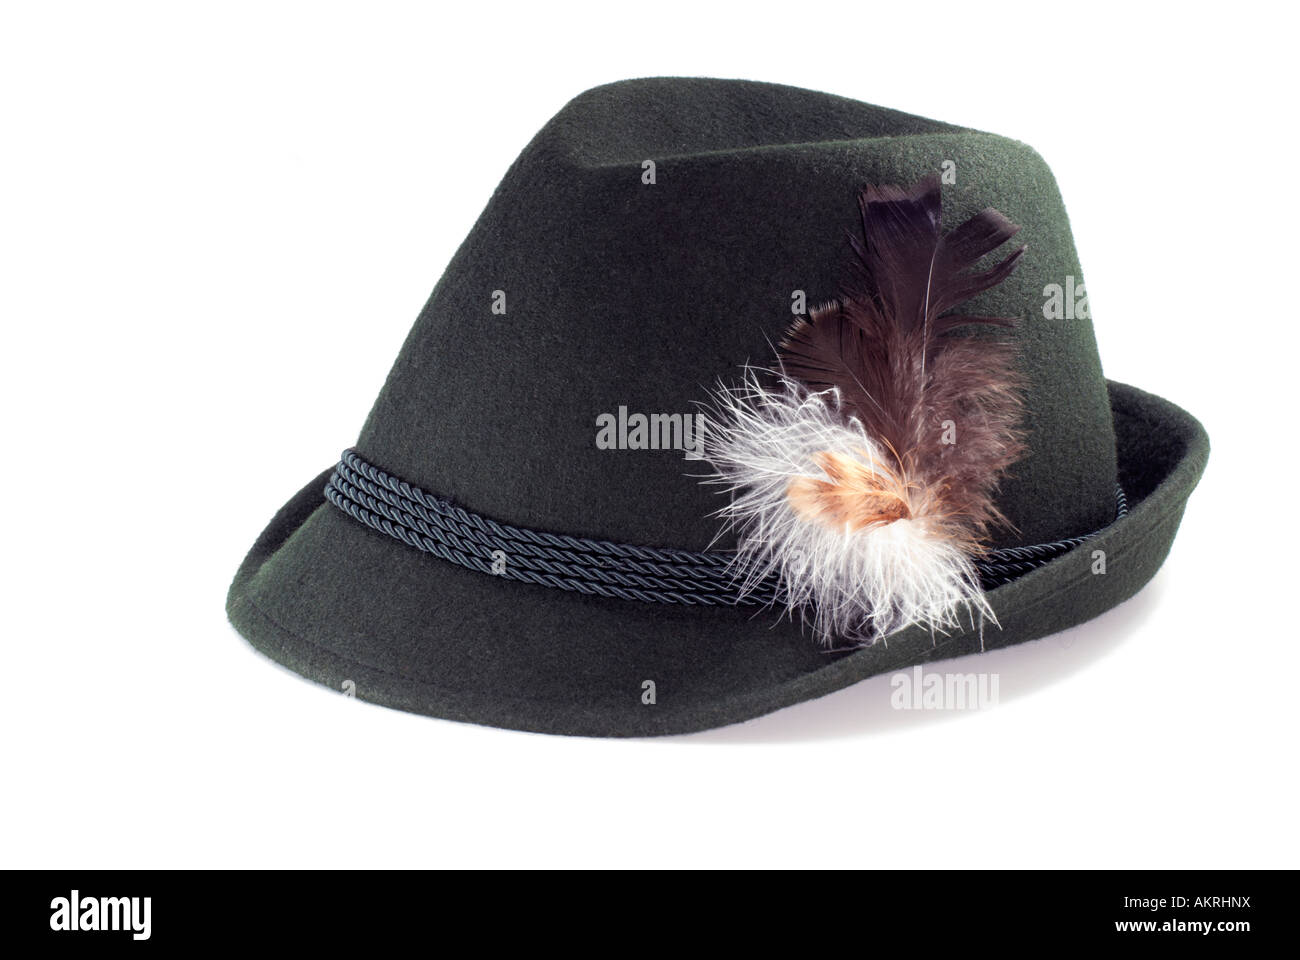 Chapeau traditionnel autrichien Photo Stock - Alamy